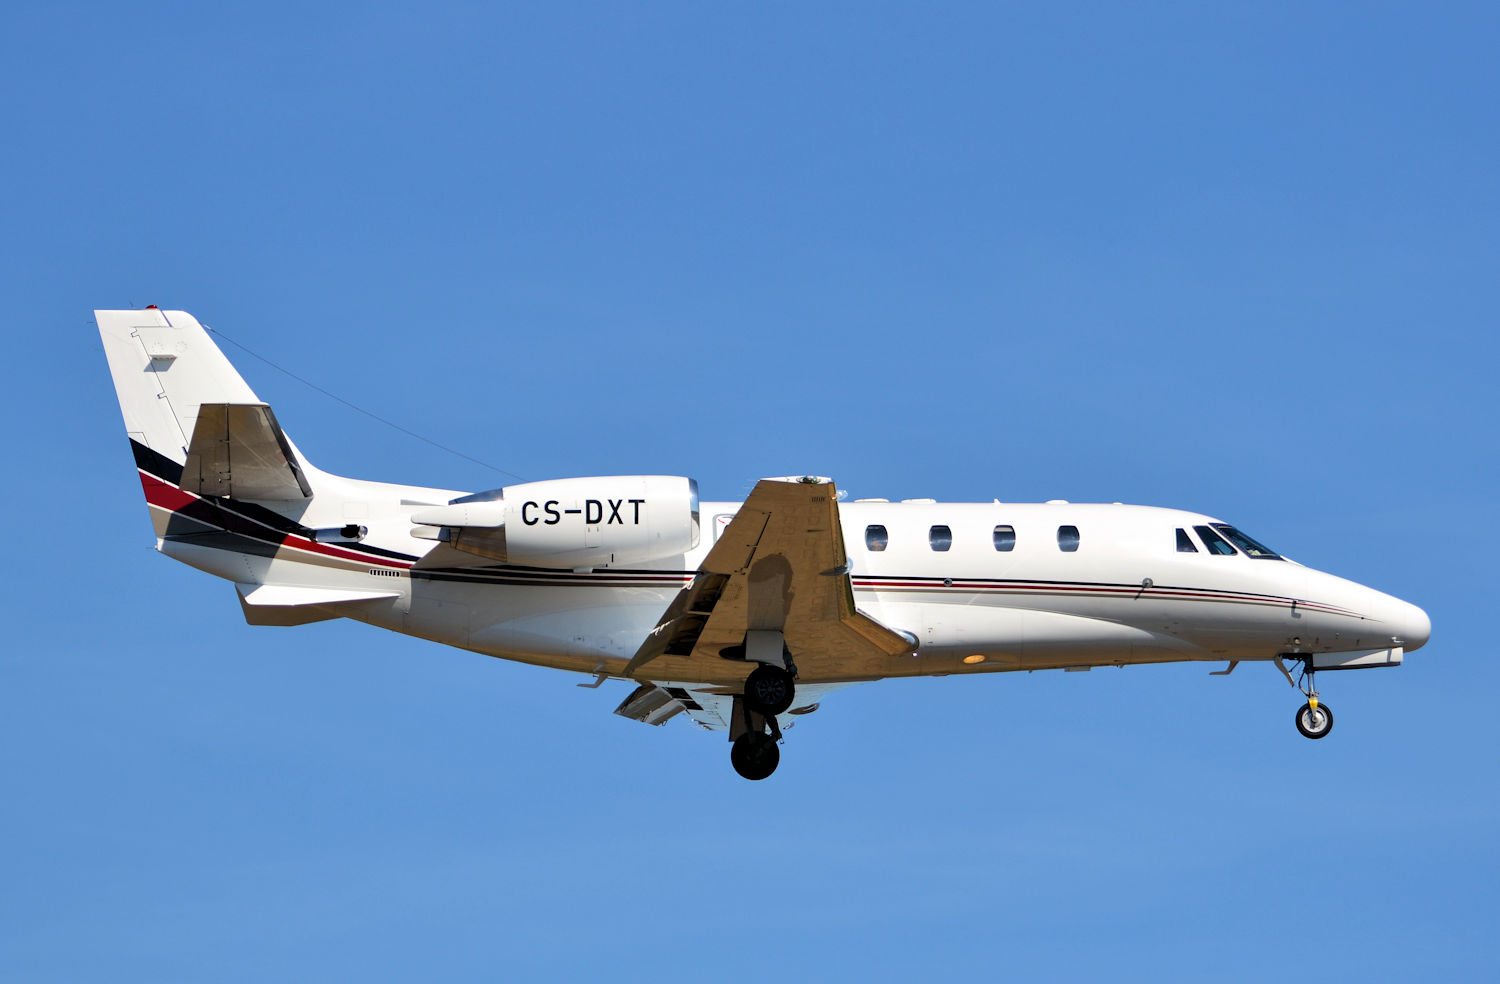 CS-DXT/CSDXT Corporate Cessna Citation Excel Airframe Information - AVSpotters.com